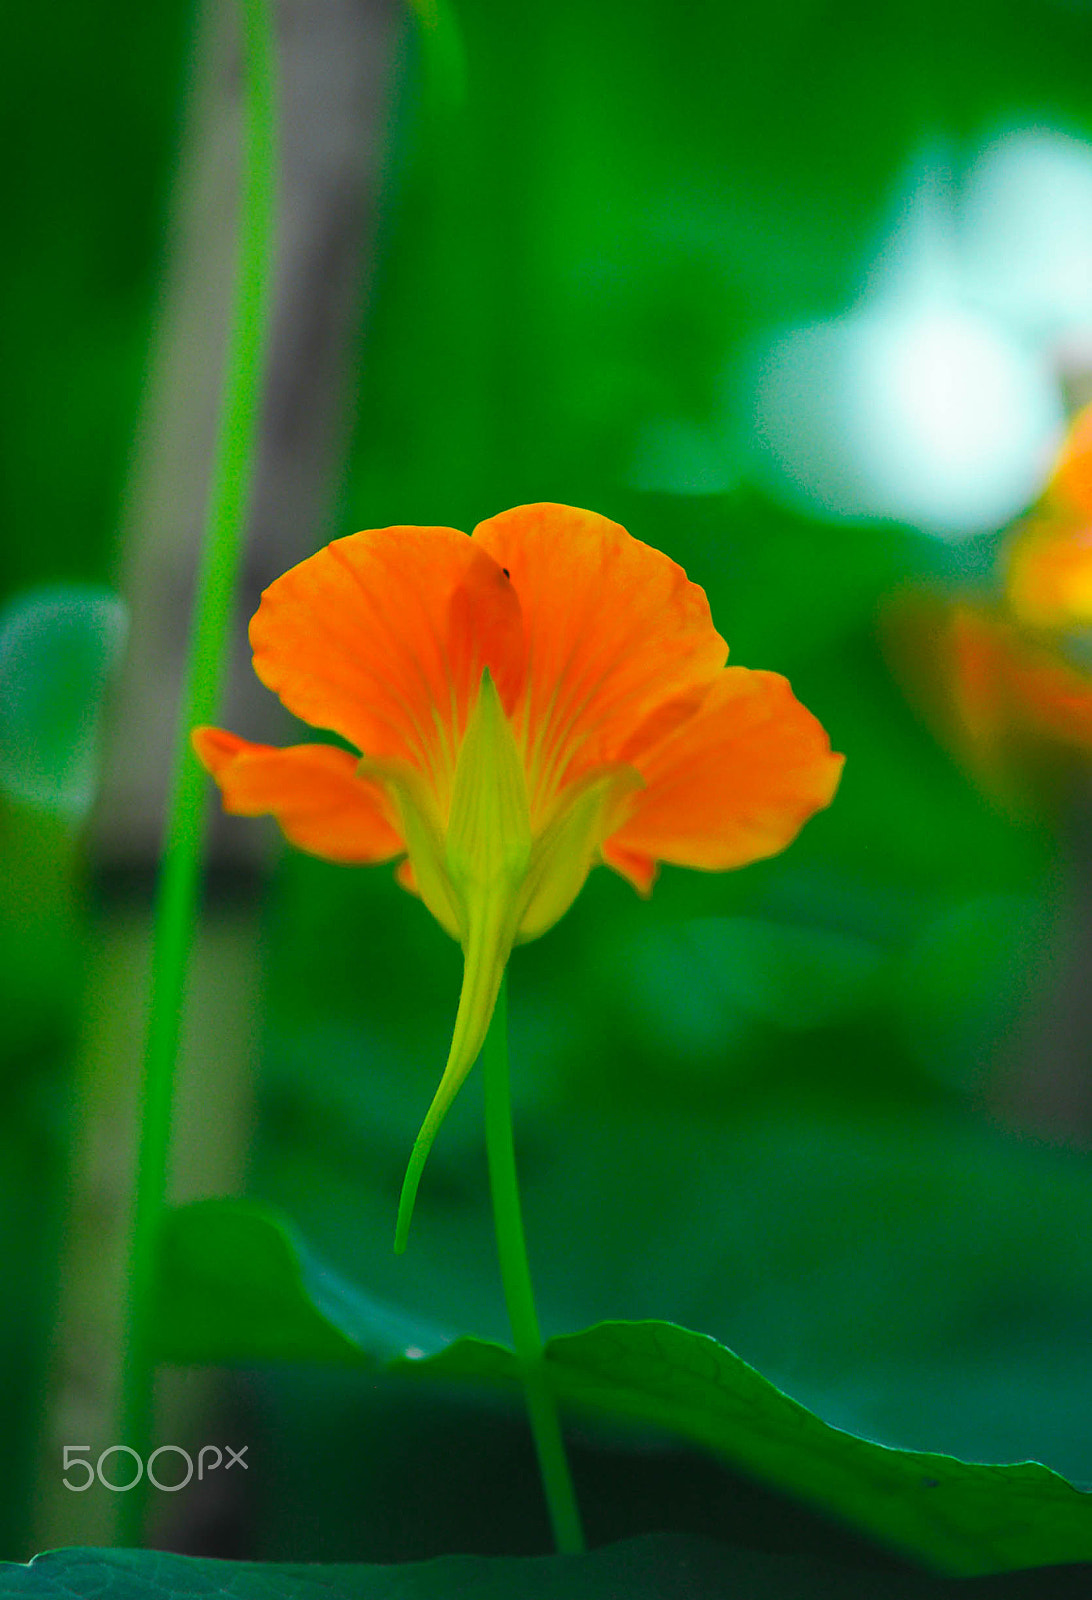 Nikon D90 + AF Zoom-Nikkor 70-210mm f/4 sample photo. Orange flower photography